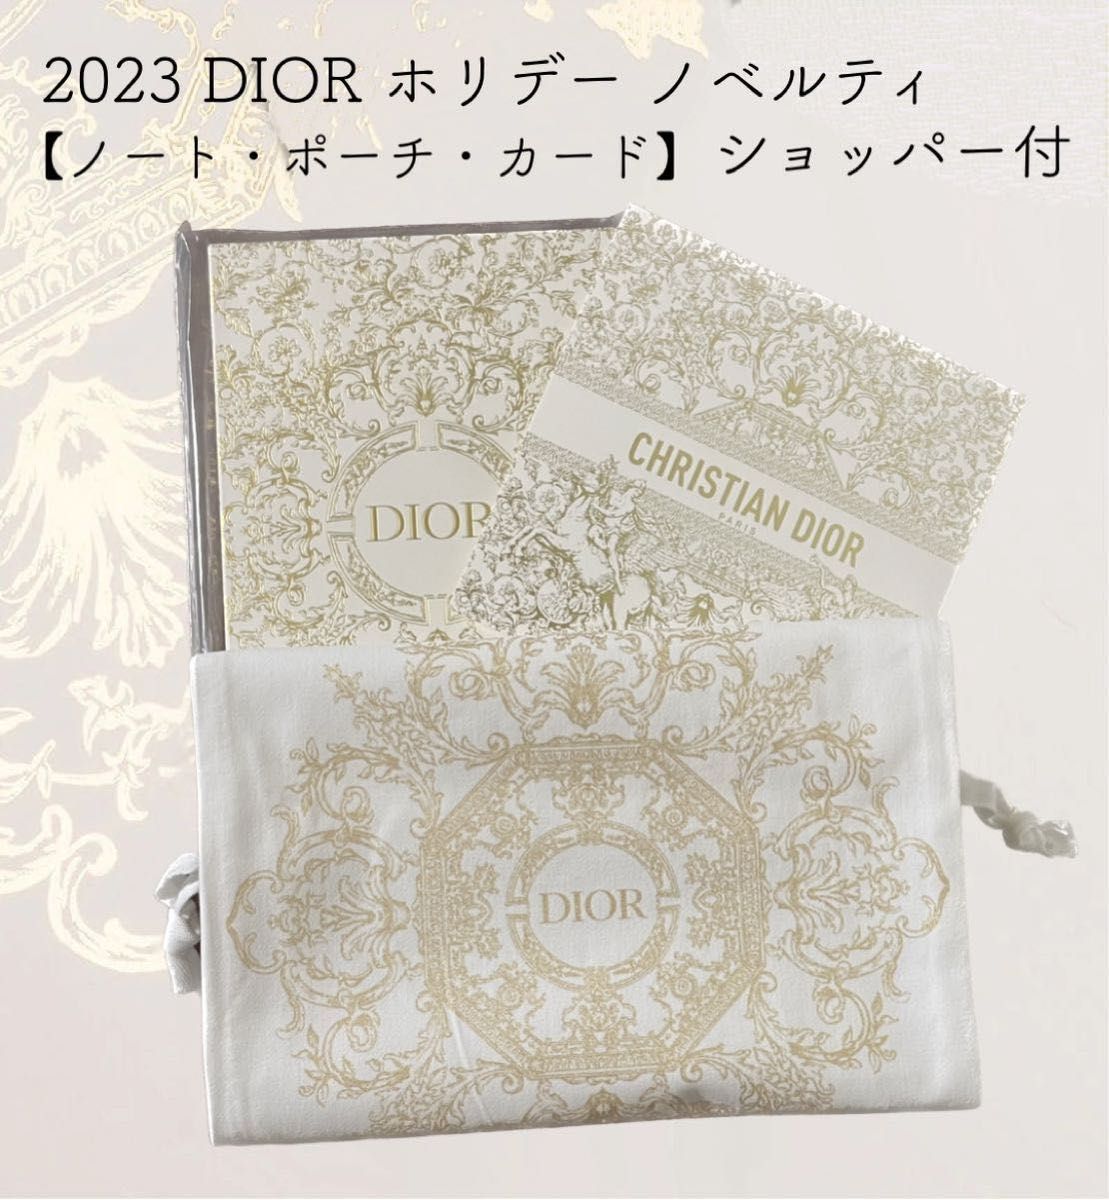 【限定】DIOR 2023 ホリデー ノベルティ セット(ノートブック・ポーチ・カード) クリスマス ショッパー付